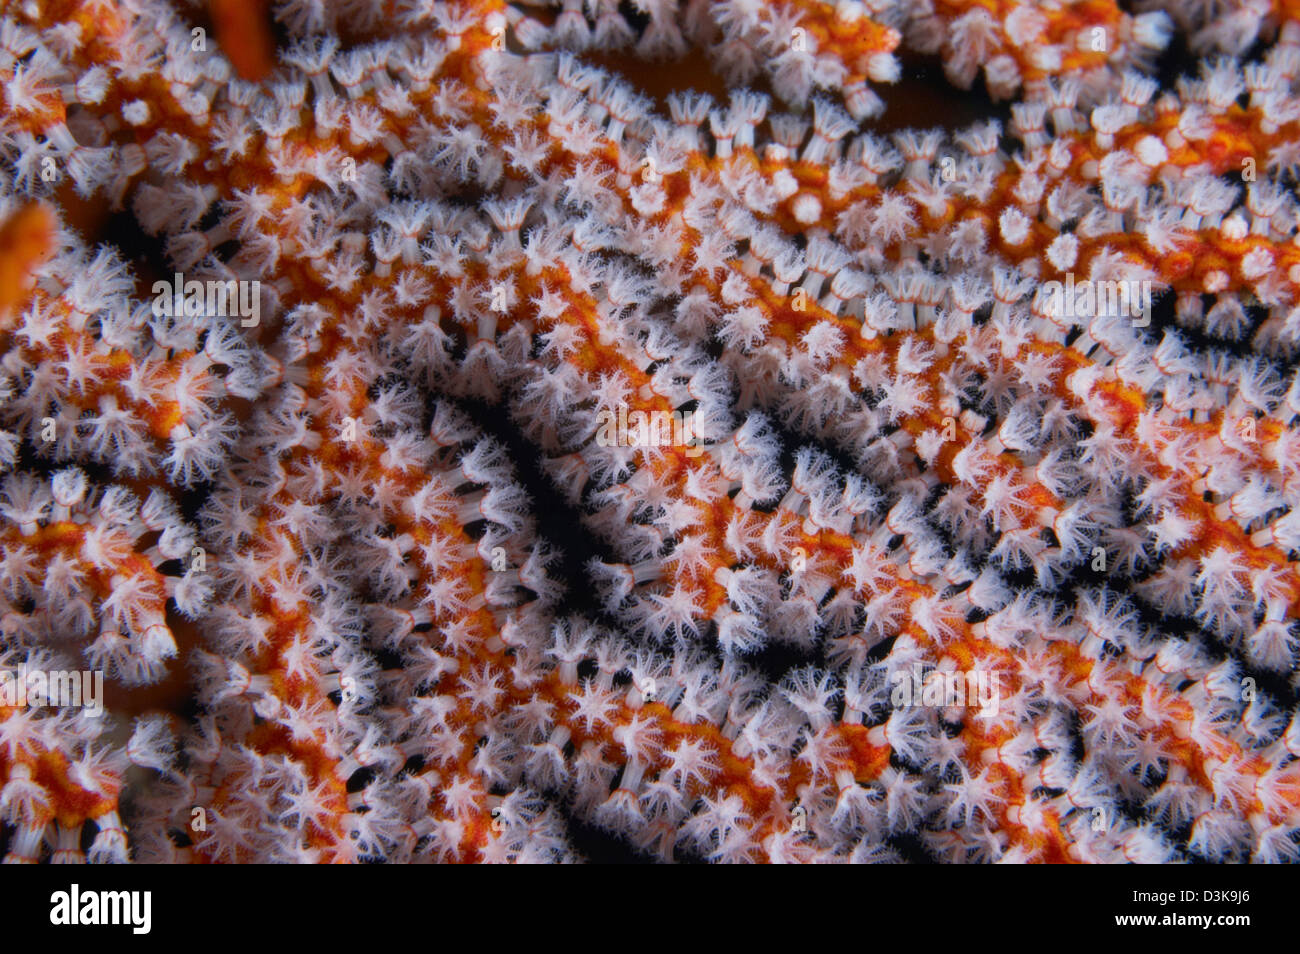 Orange gorgonian sea fan with white polyps, Bali, Indonesia. Stock Photo